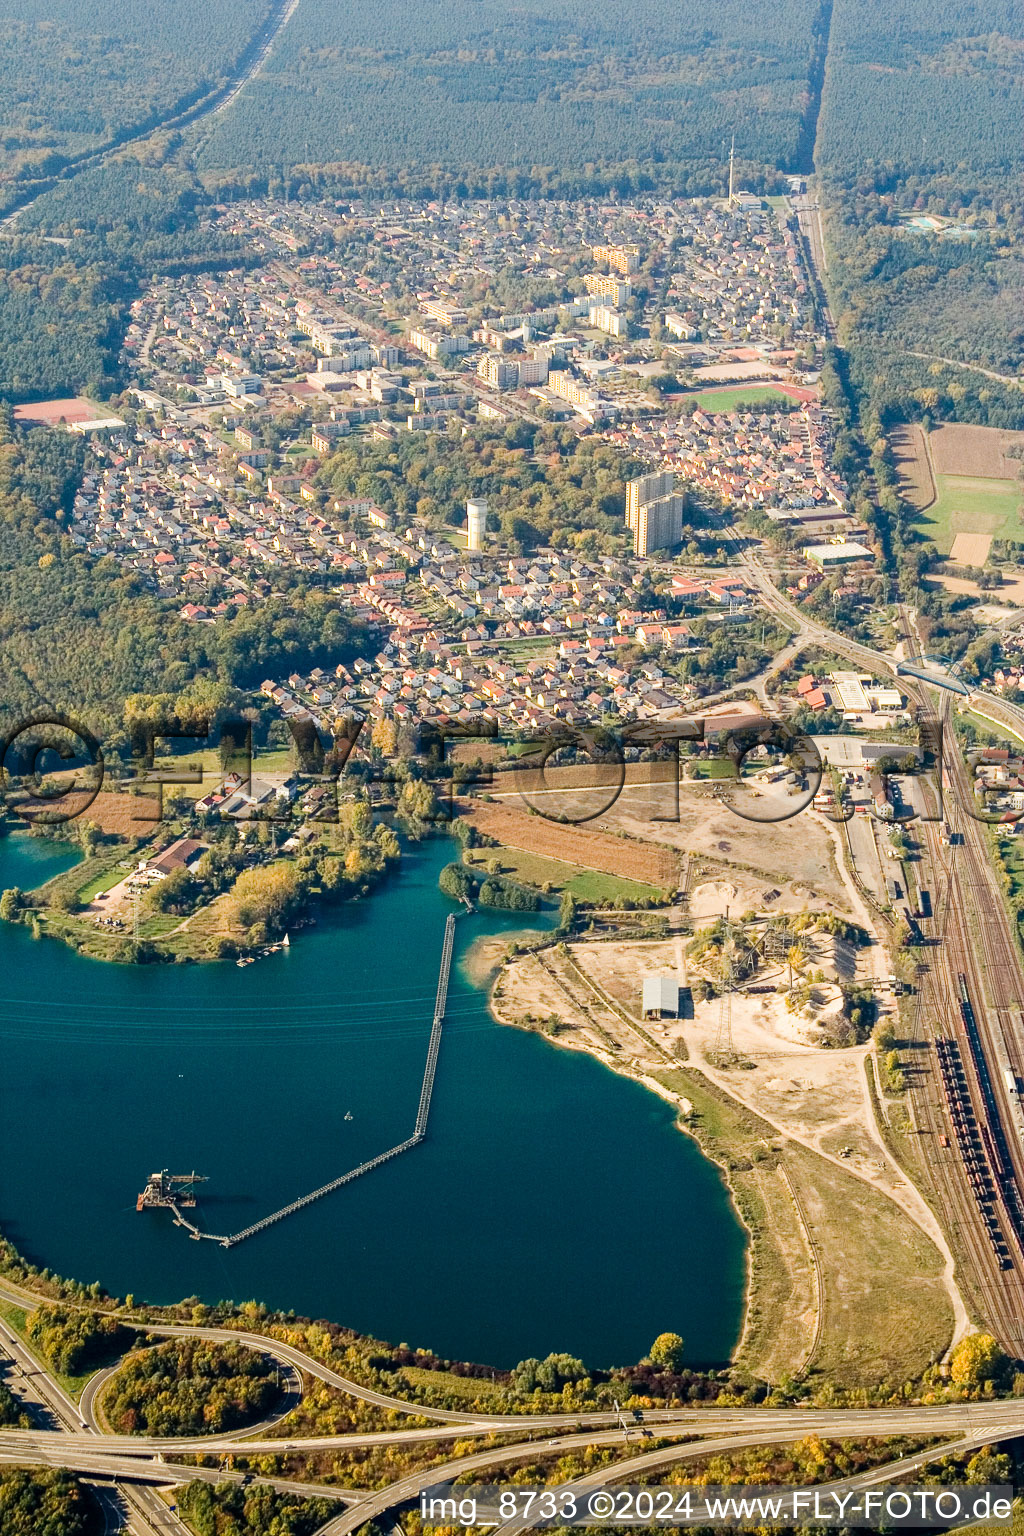 Dorschberg in Wörth am Rhein im Bundesland Rheinland-Pfalz, Deutschland aus der Luft